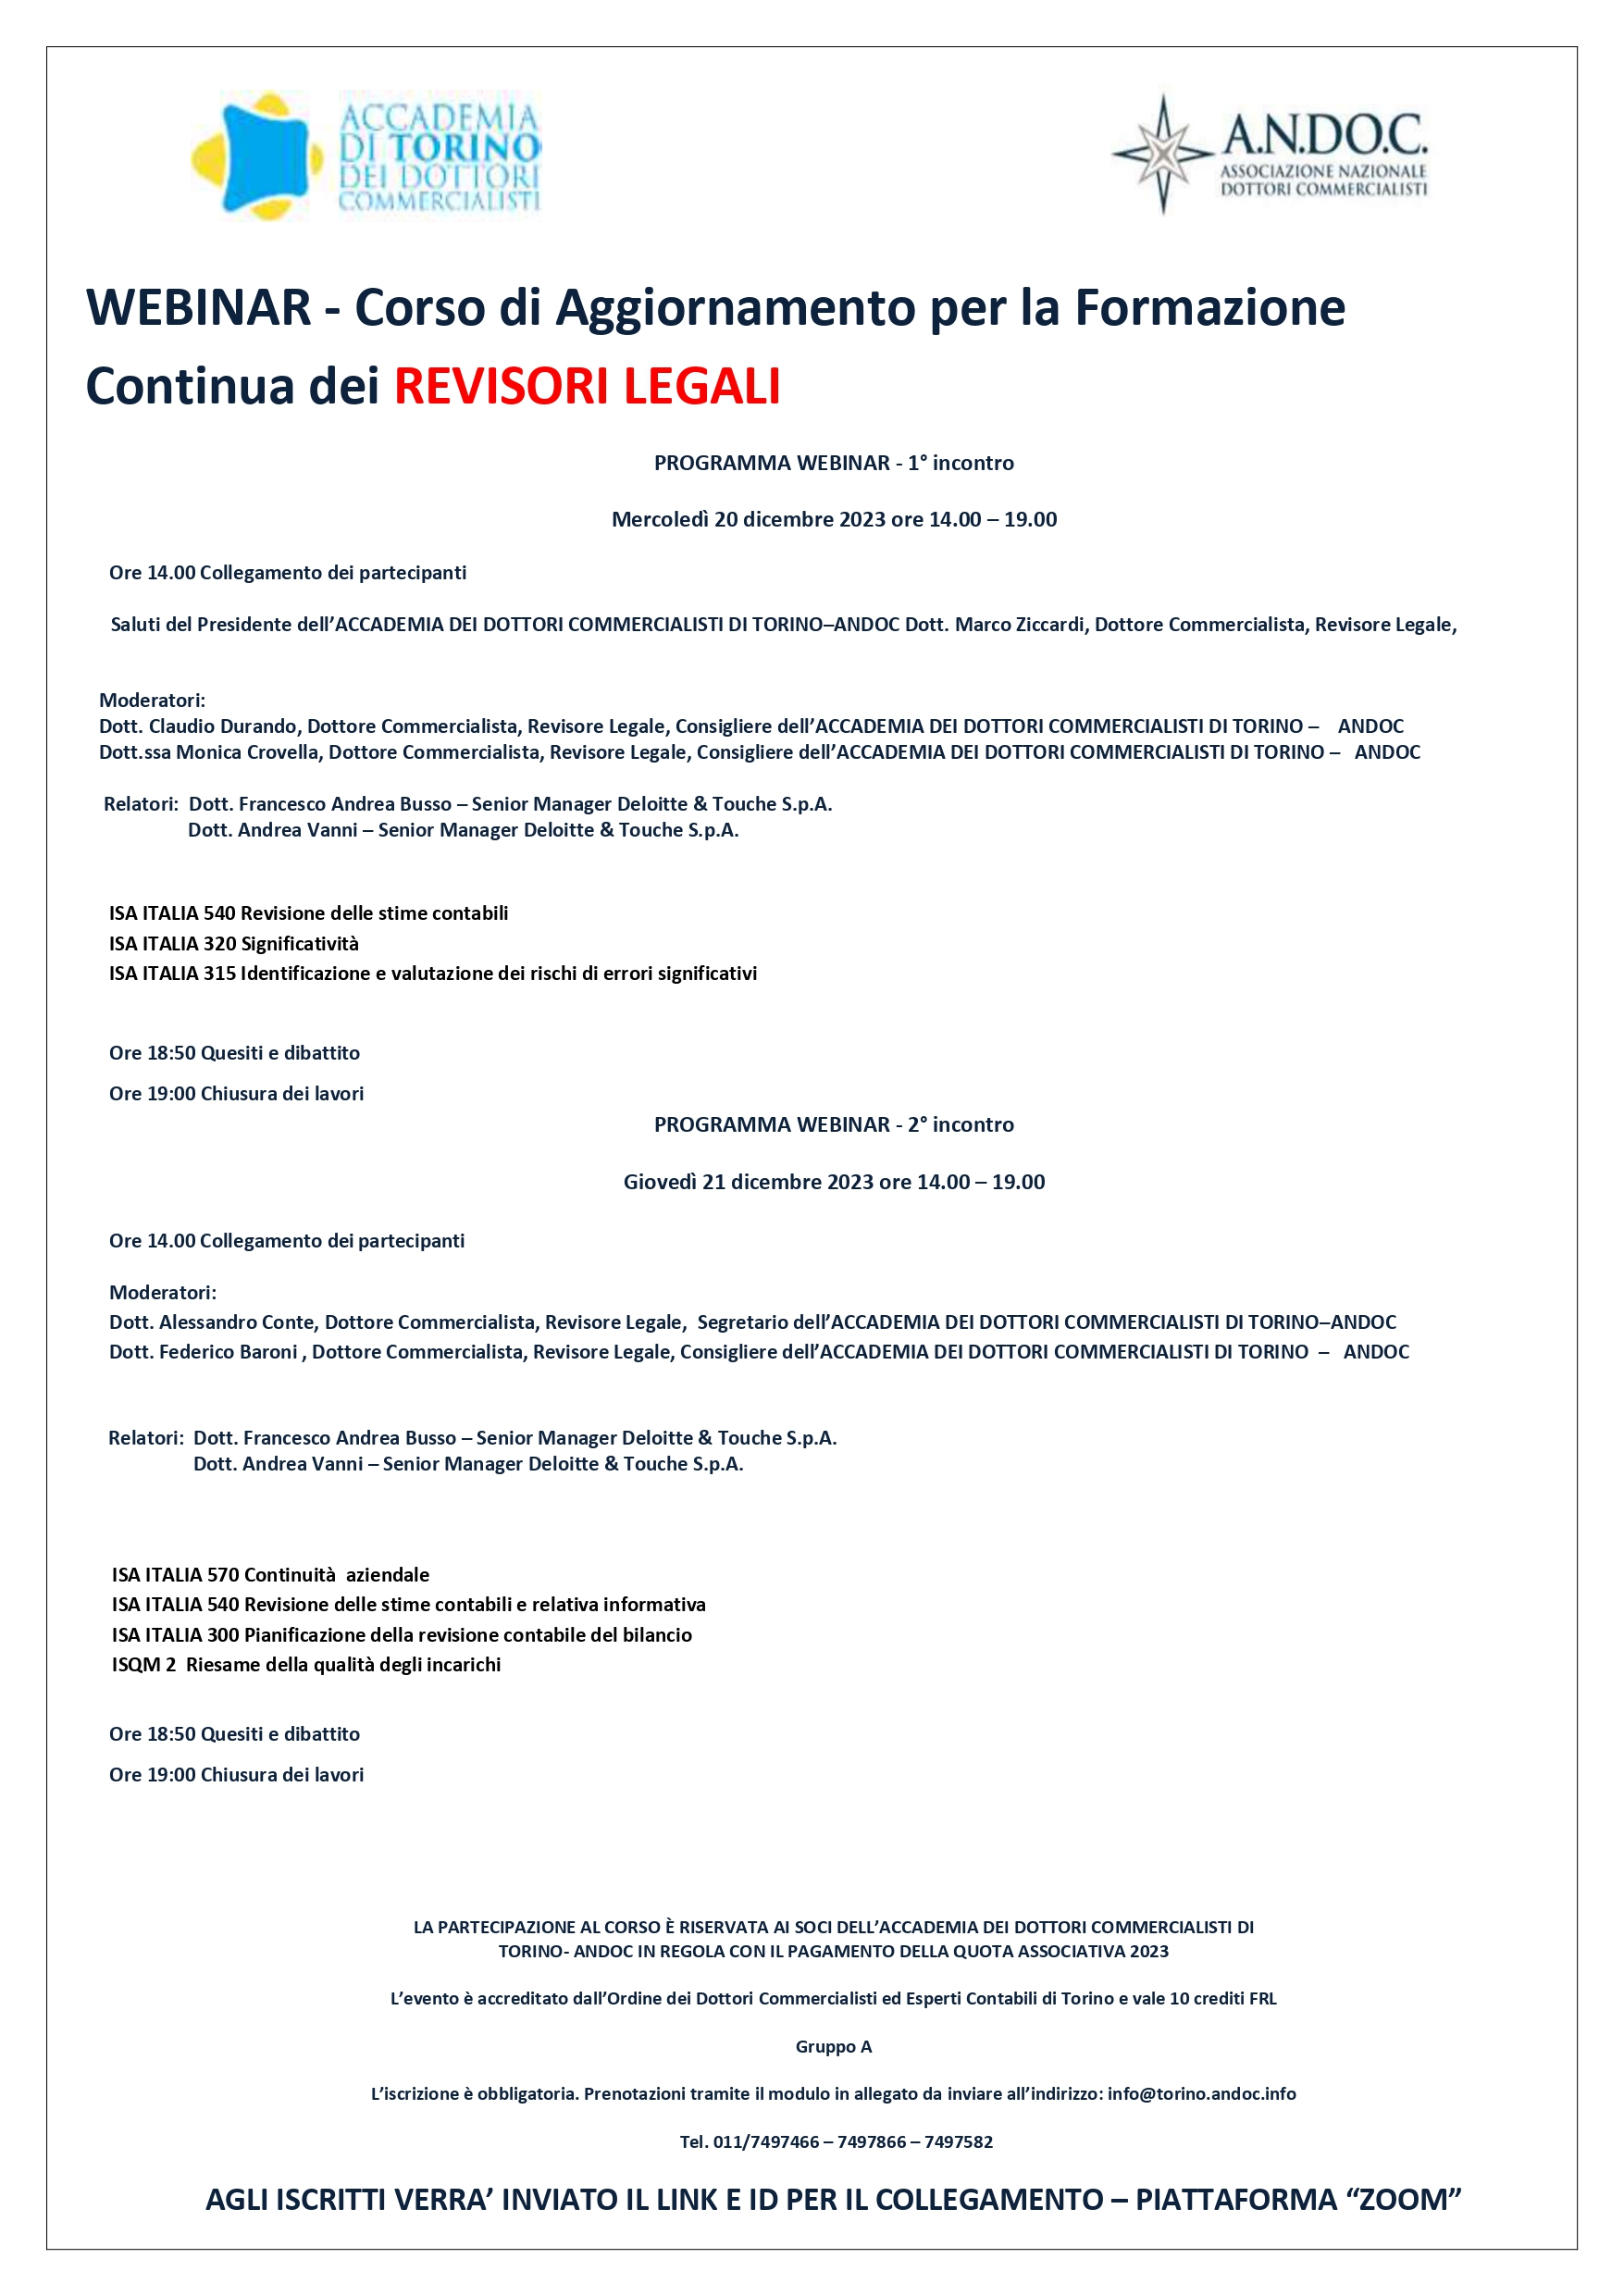 WEBINAR-Corso di aggiornamento per la formazione continua dei REVISORI LEGALI-Accademia dei Dottori Commercialisti Torino